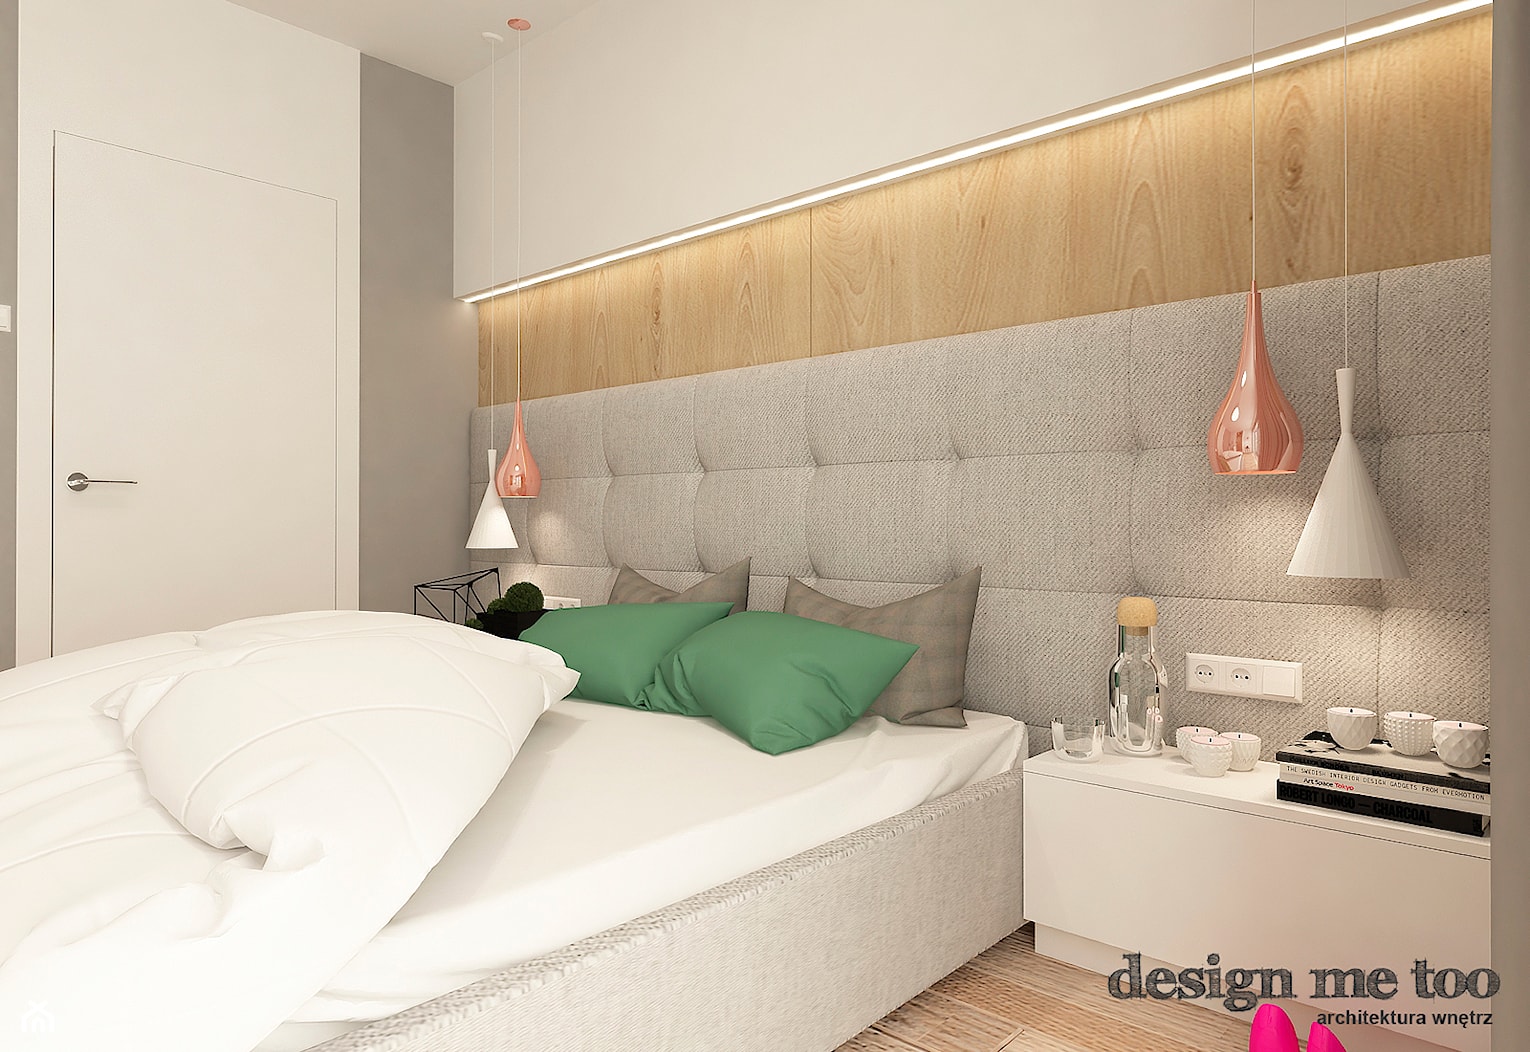 NOWOCZESNY DOM W GRODZISKU MAZOWIECKIM - Mała szara sypialnia, styl nowoczesny - zdjęcie od design me too - Homebook